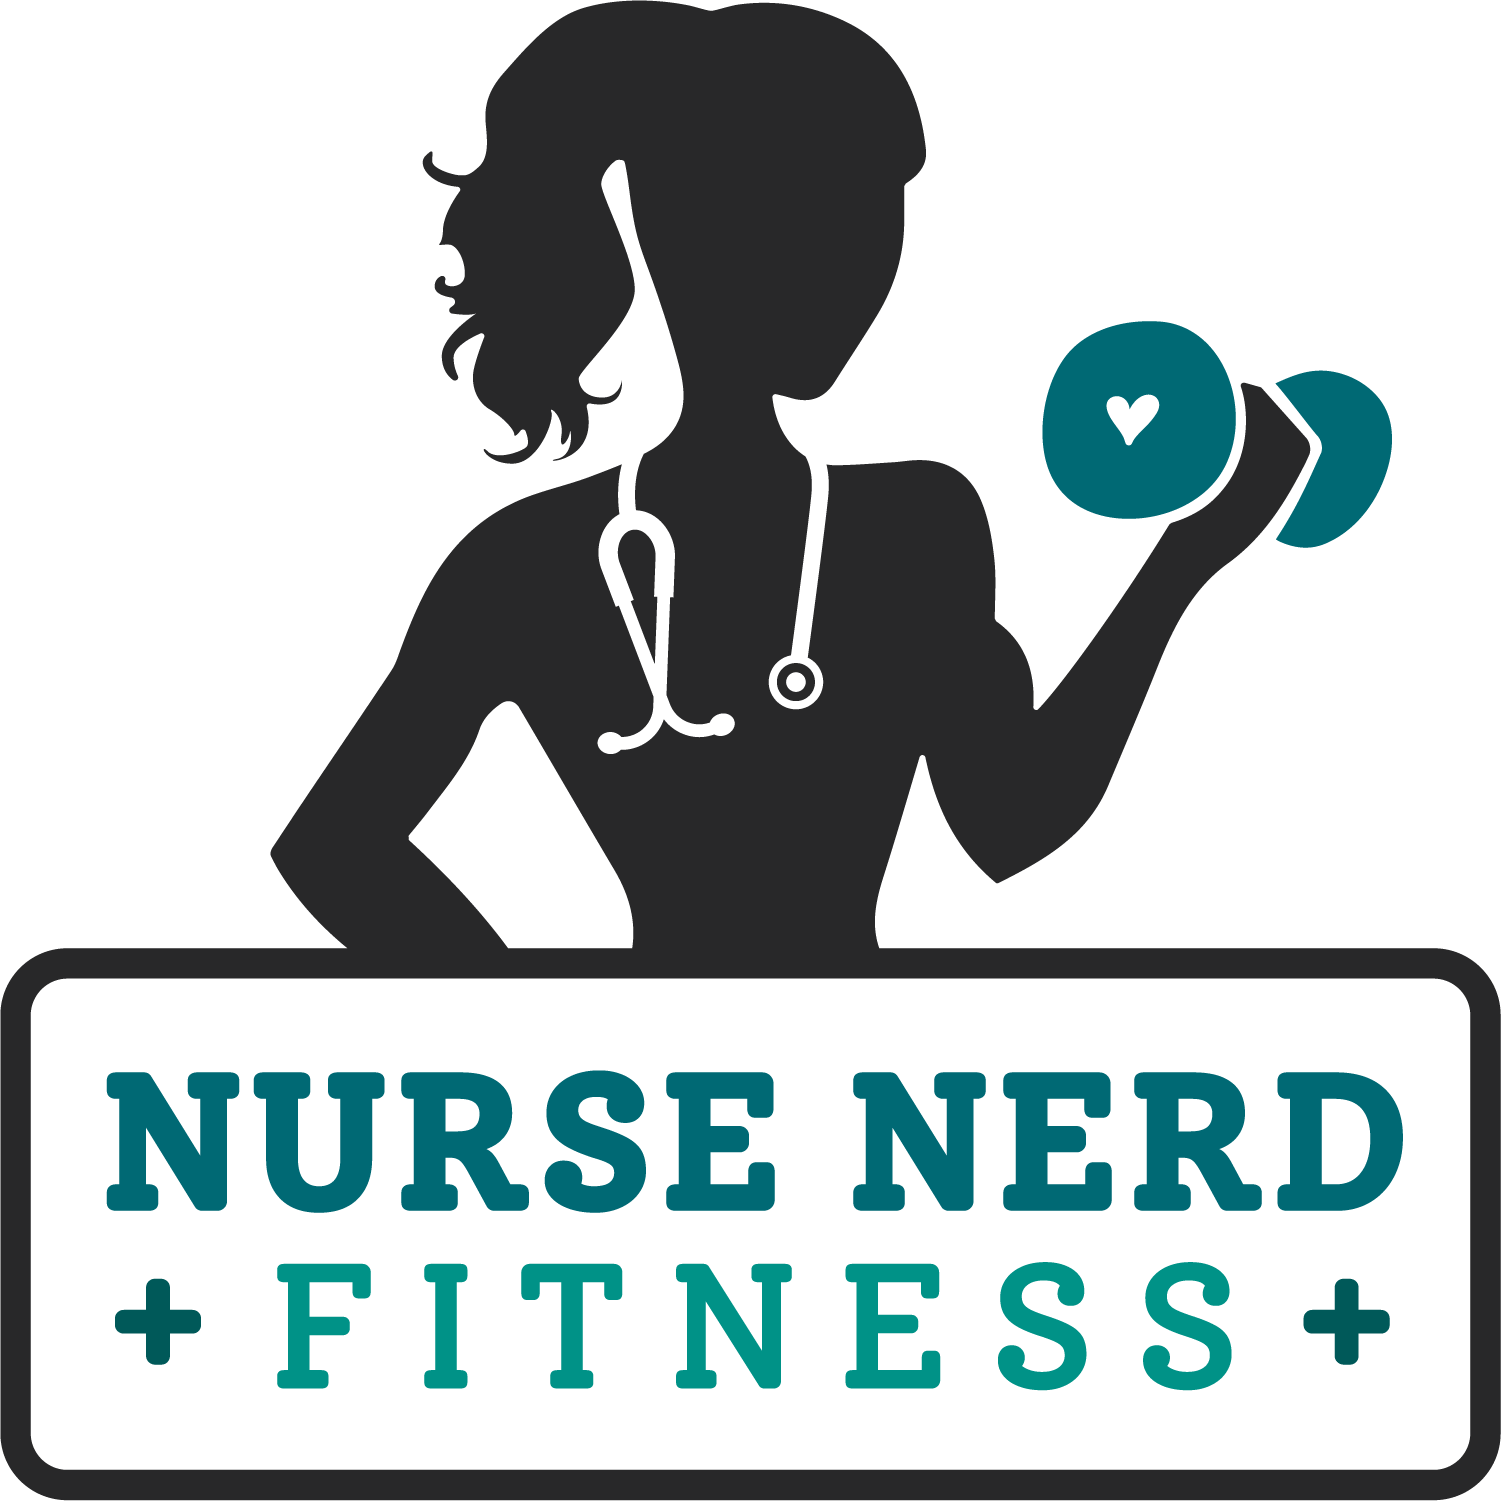 nerd fitness logo clipart